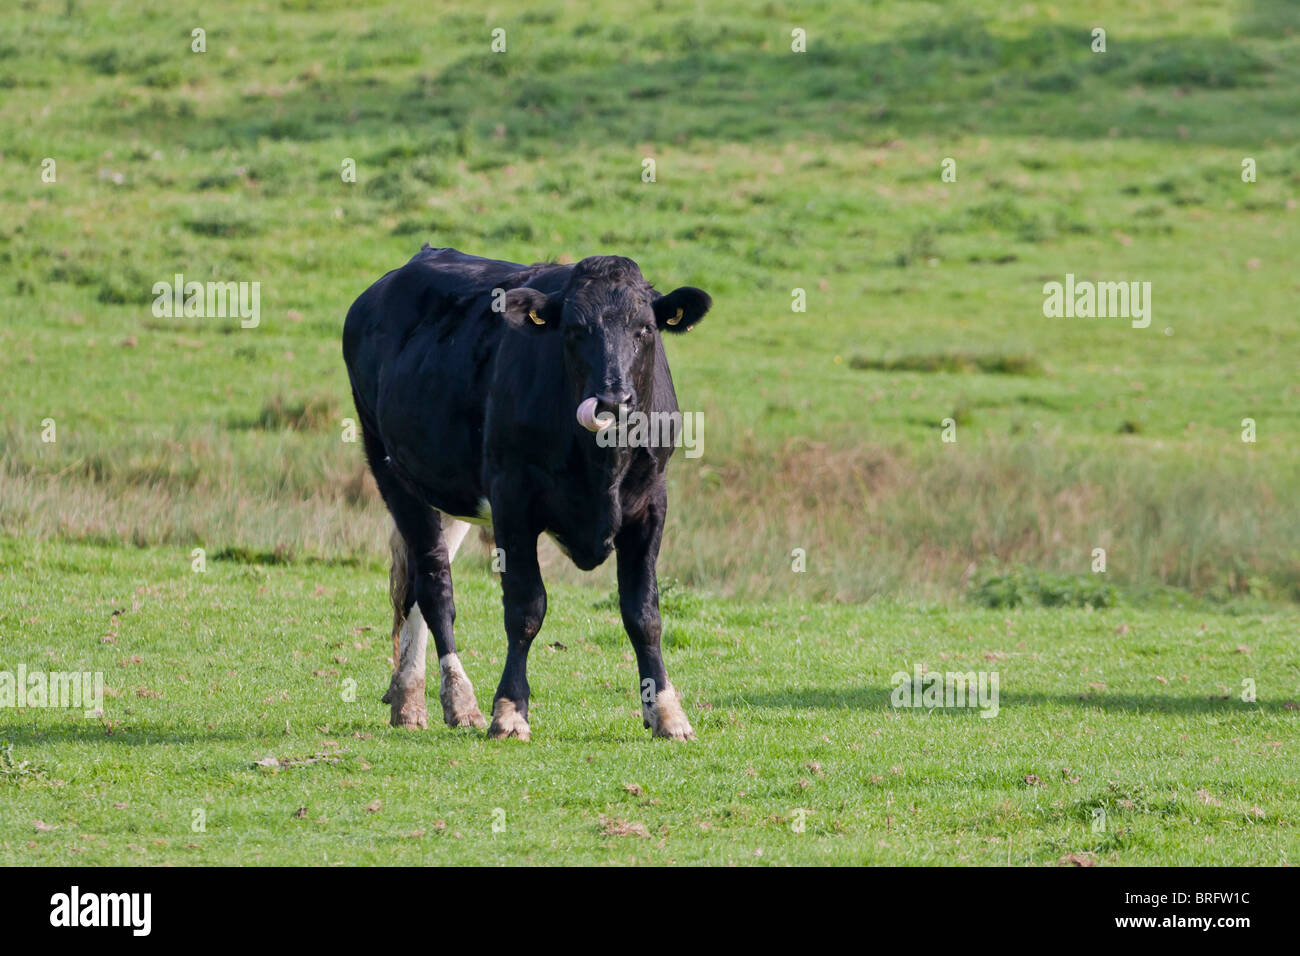 Black  Steer Farm Animal in Field Livestock Stock Photo